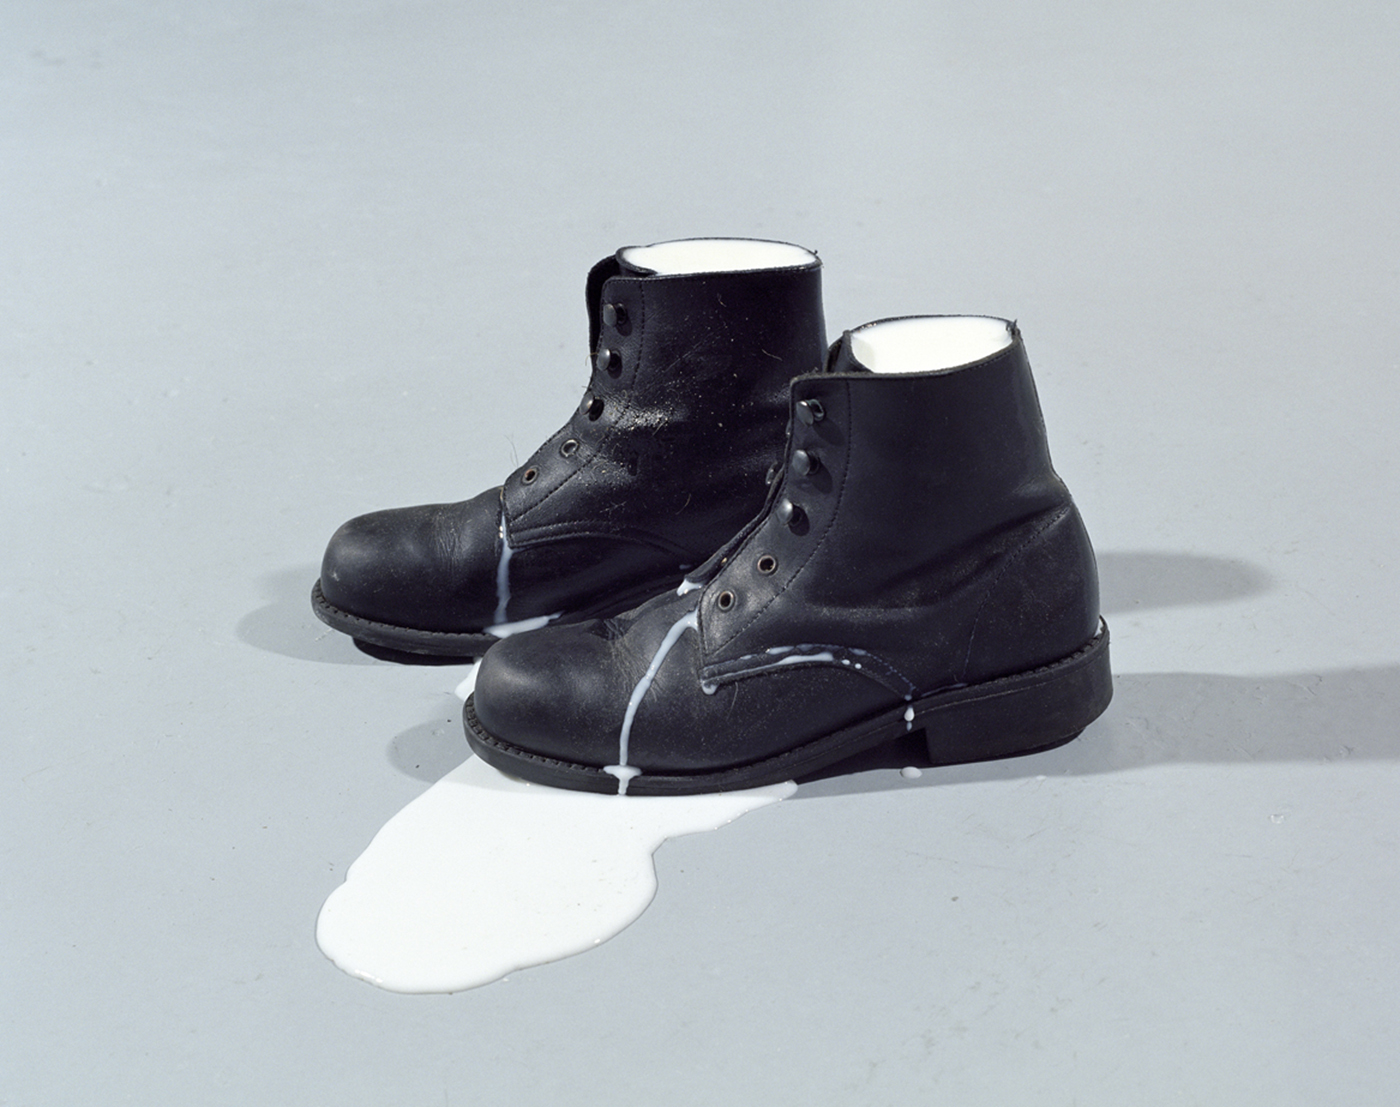 Les chaussures de lait IV B (série chaussures de lait), 2002